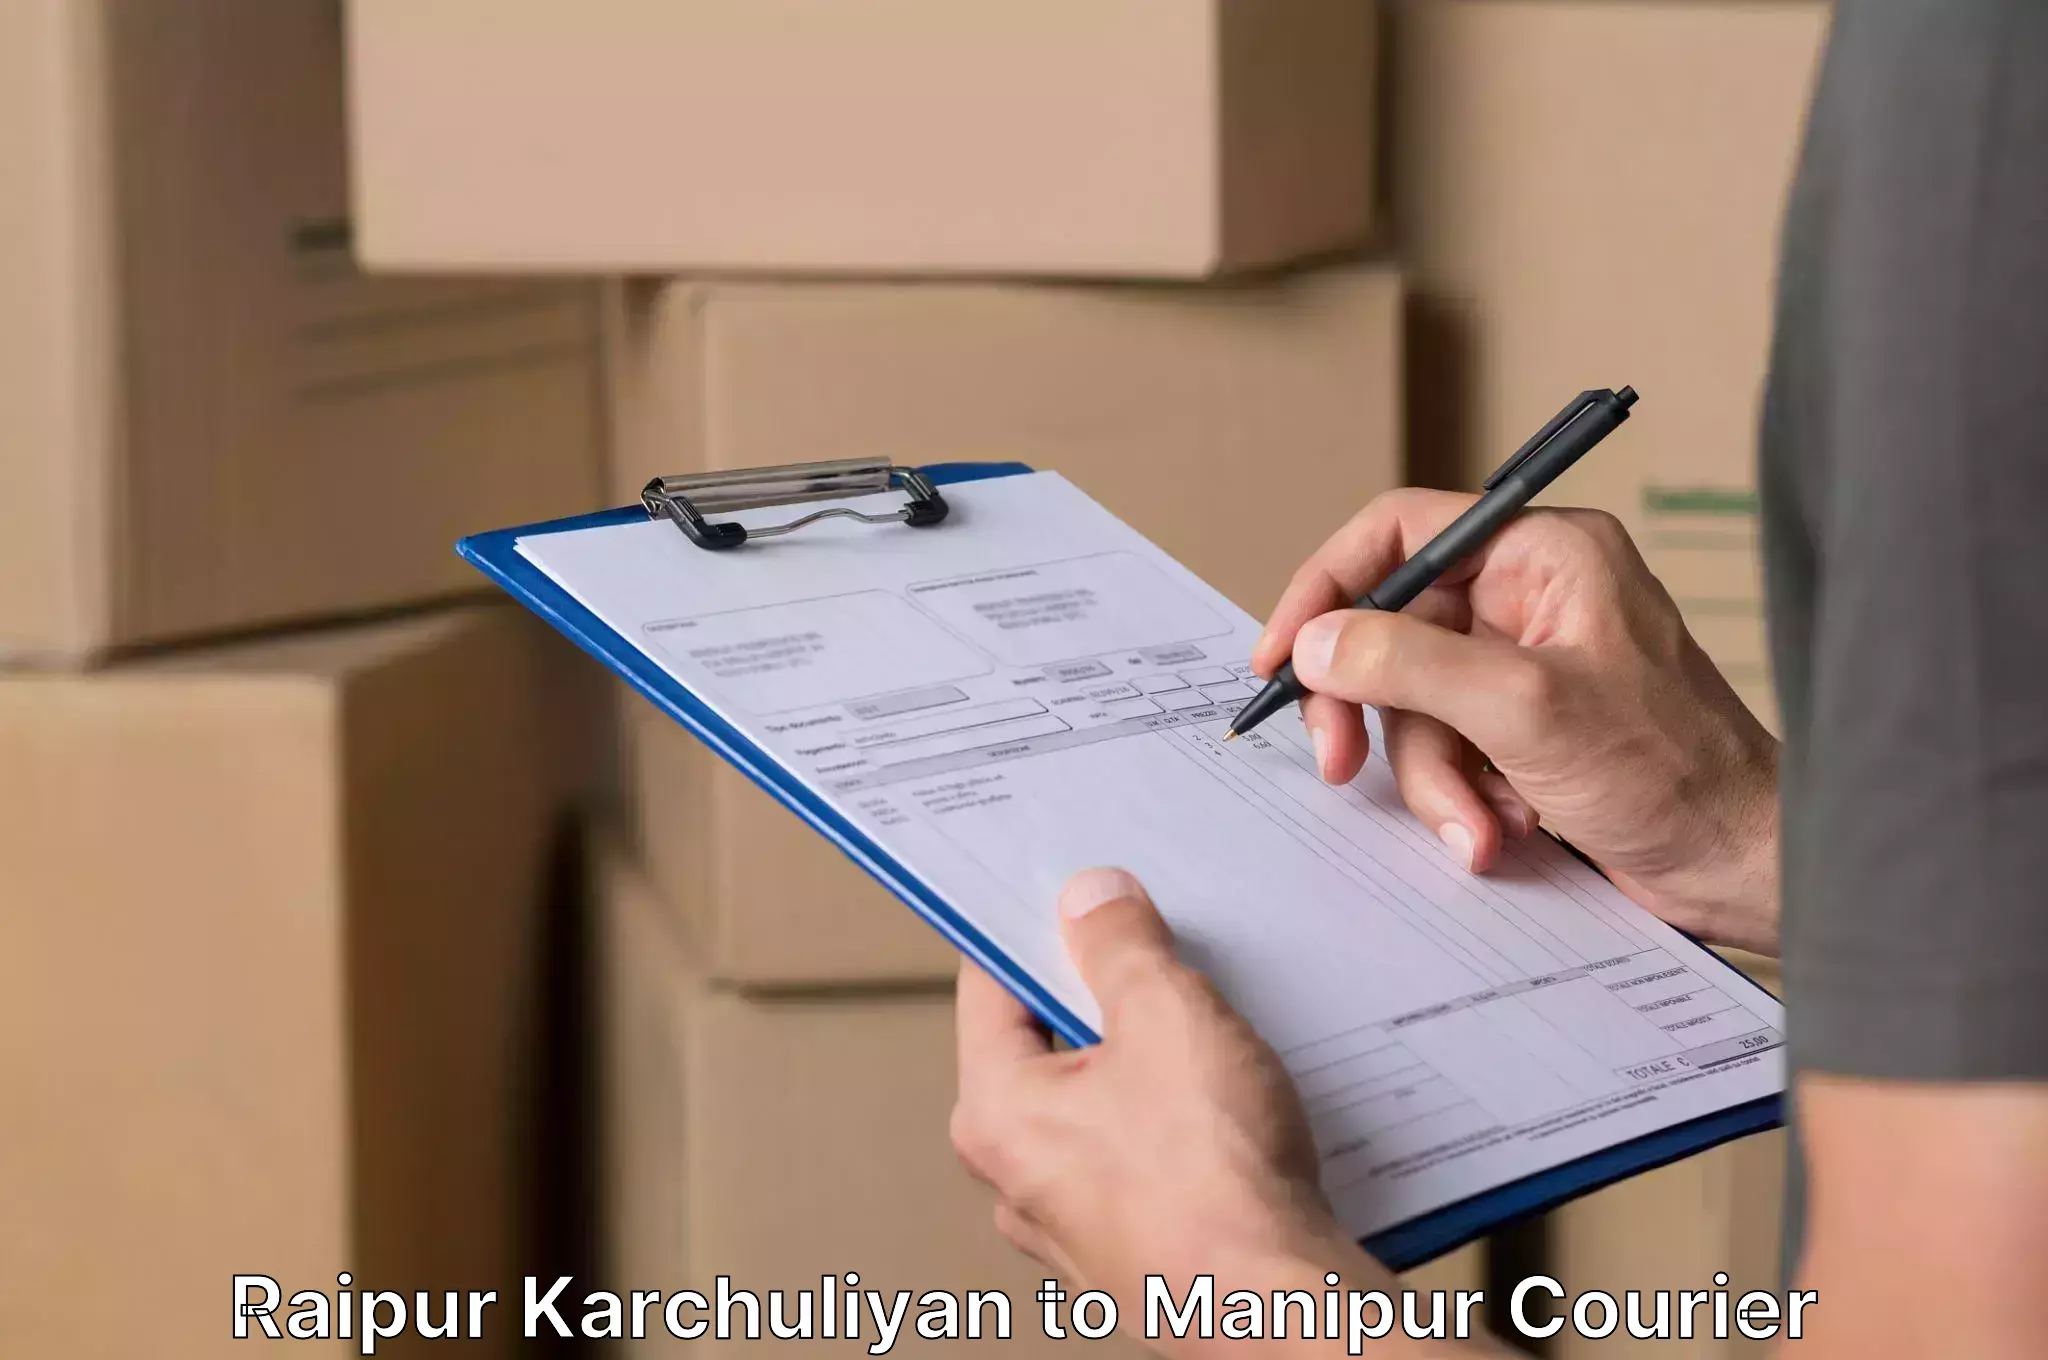 Professional furniture transport Raipur Karchuliyan to Moirang